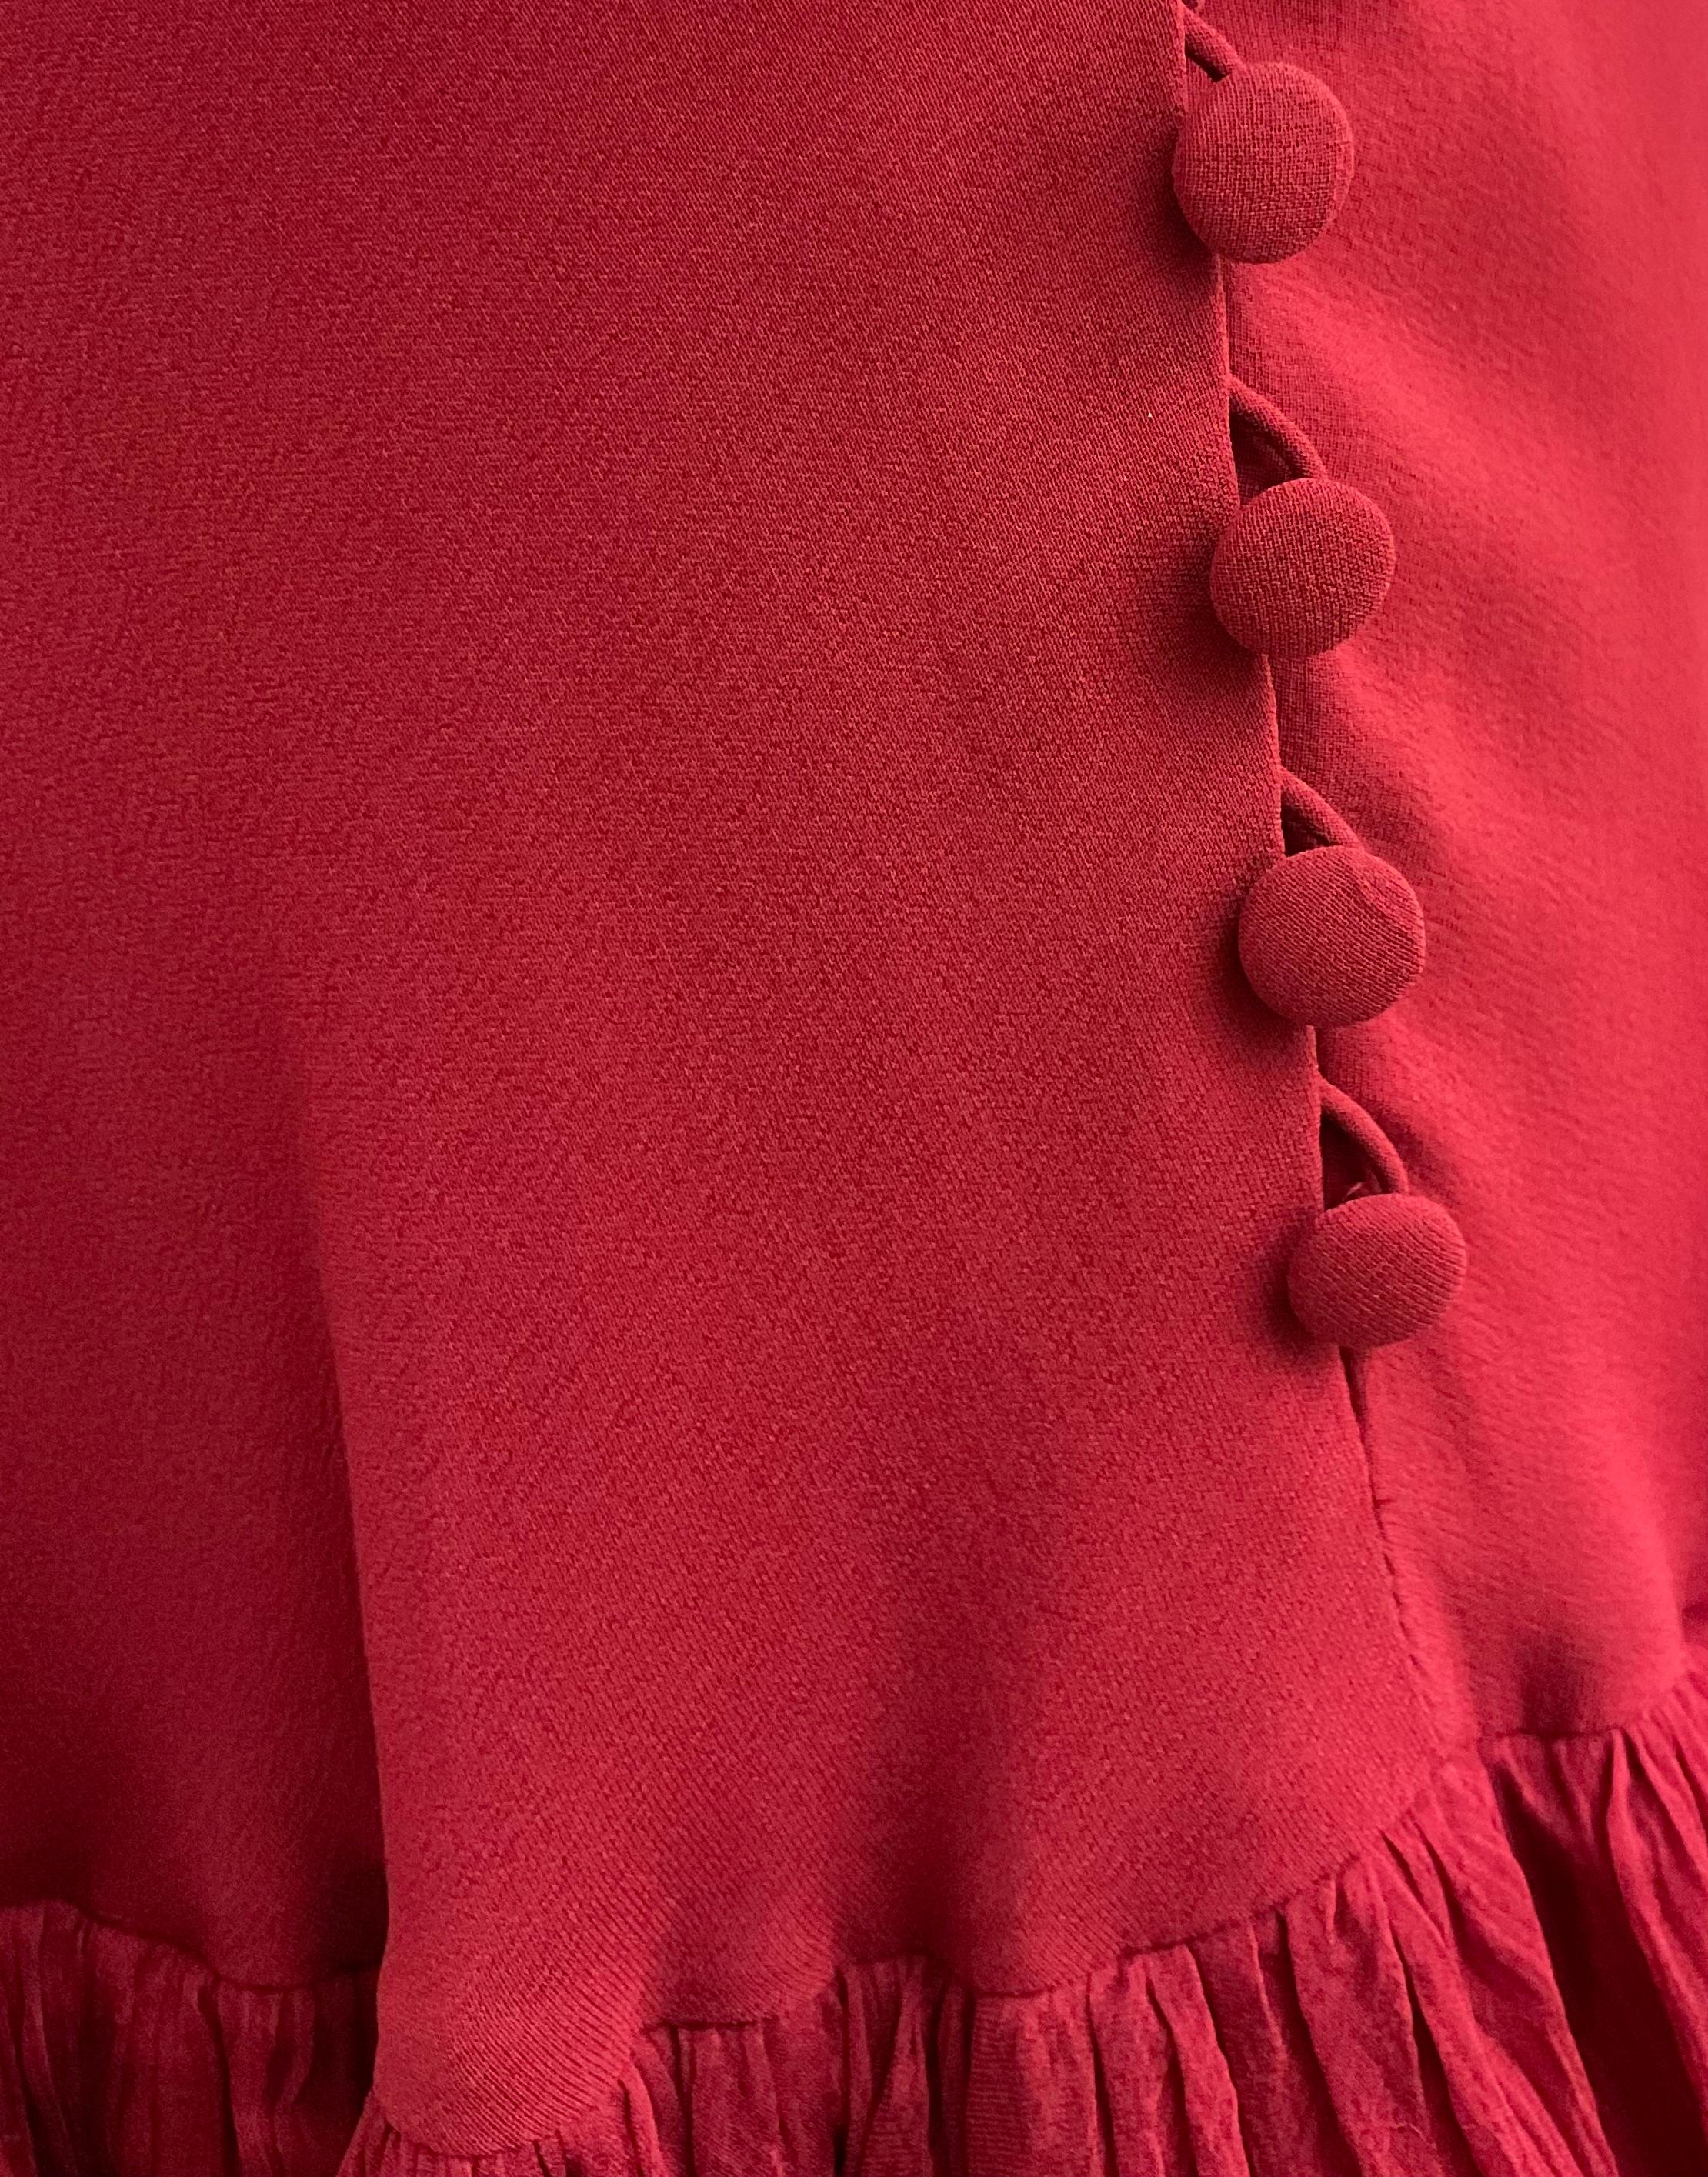 JOHN GALLIANO - Robe asymétrique rouge romantique 